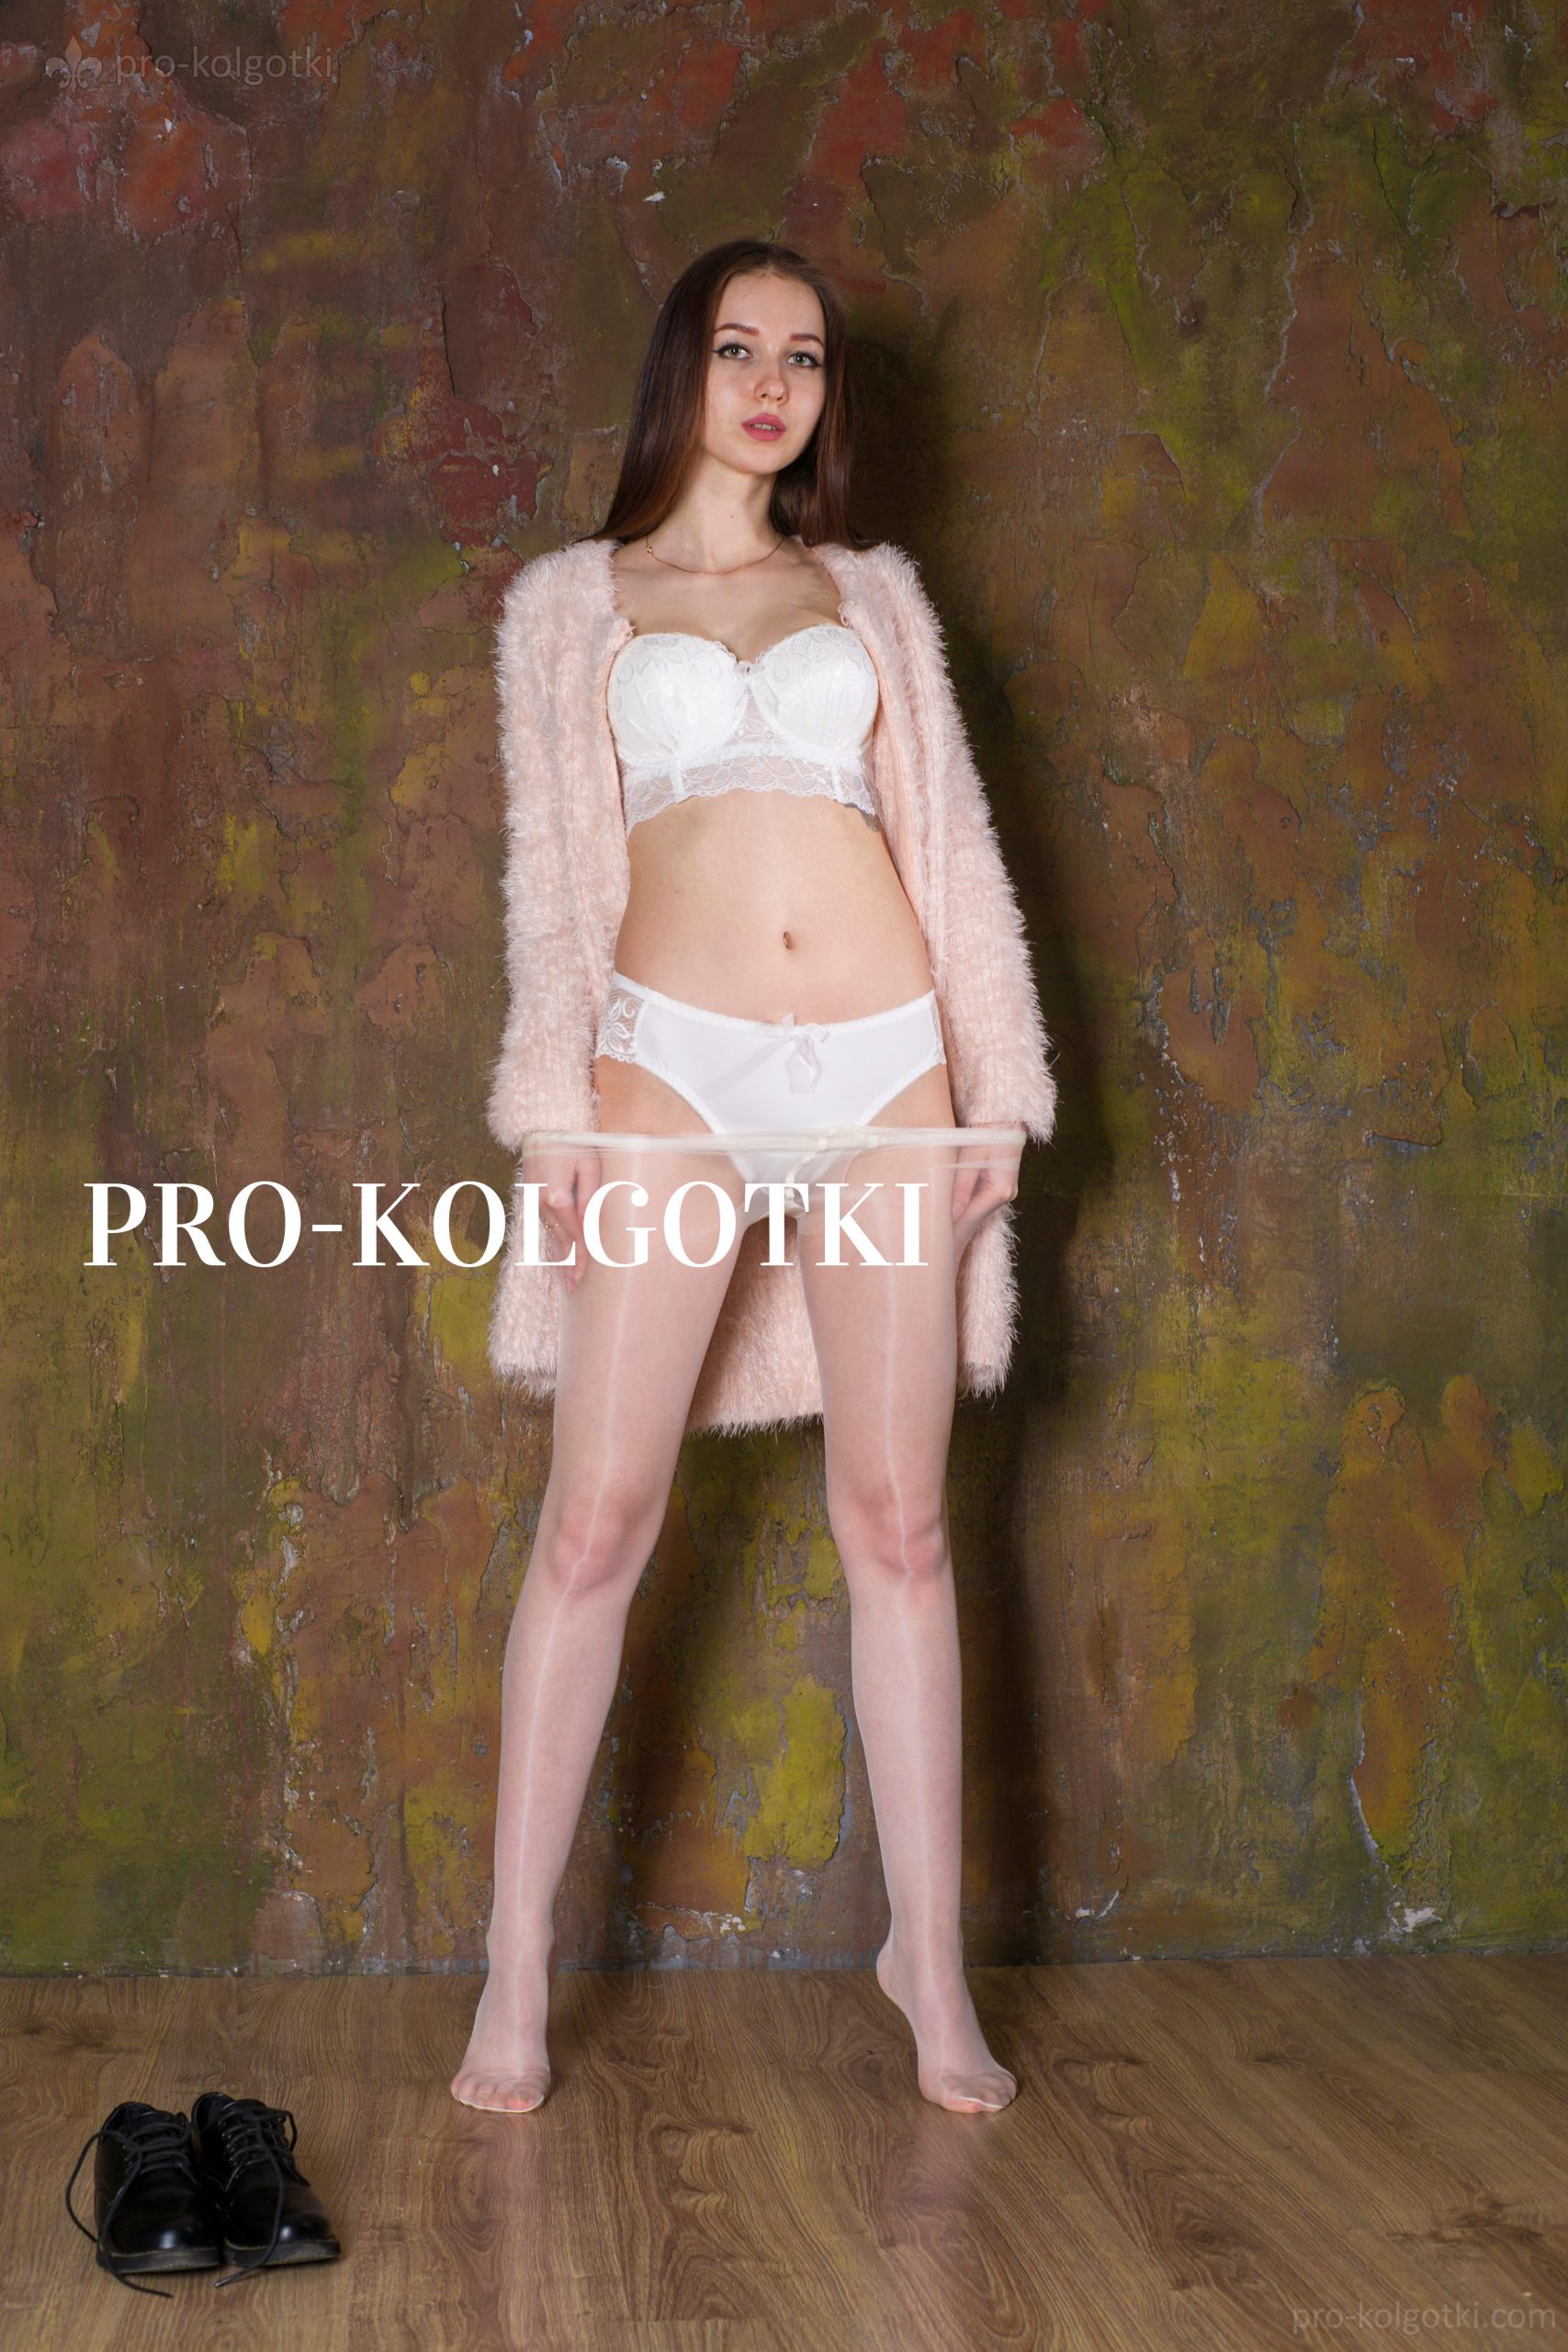 girls in pantyhose - photo from pro-kolgotki magazine May 2017 (part 1)